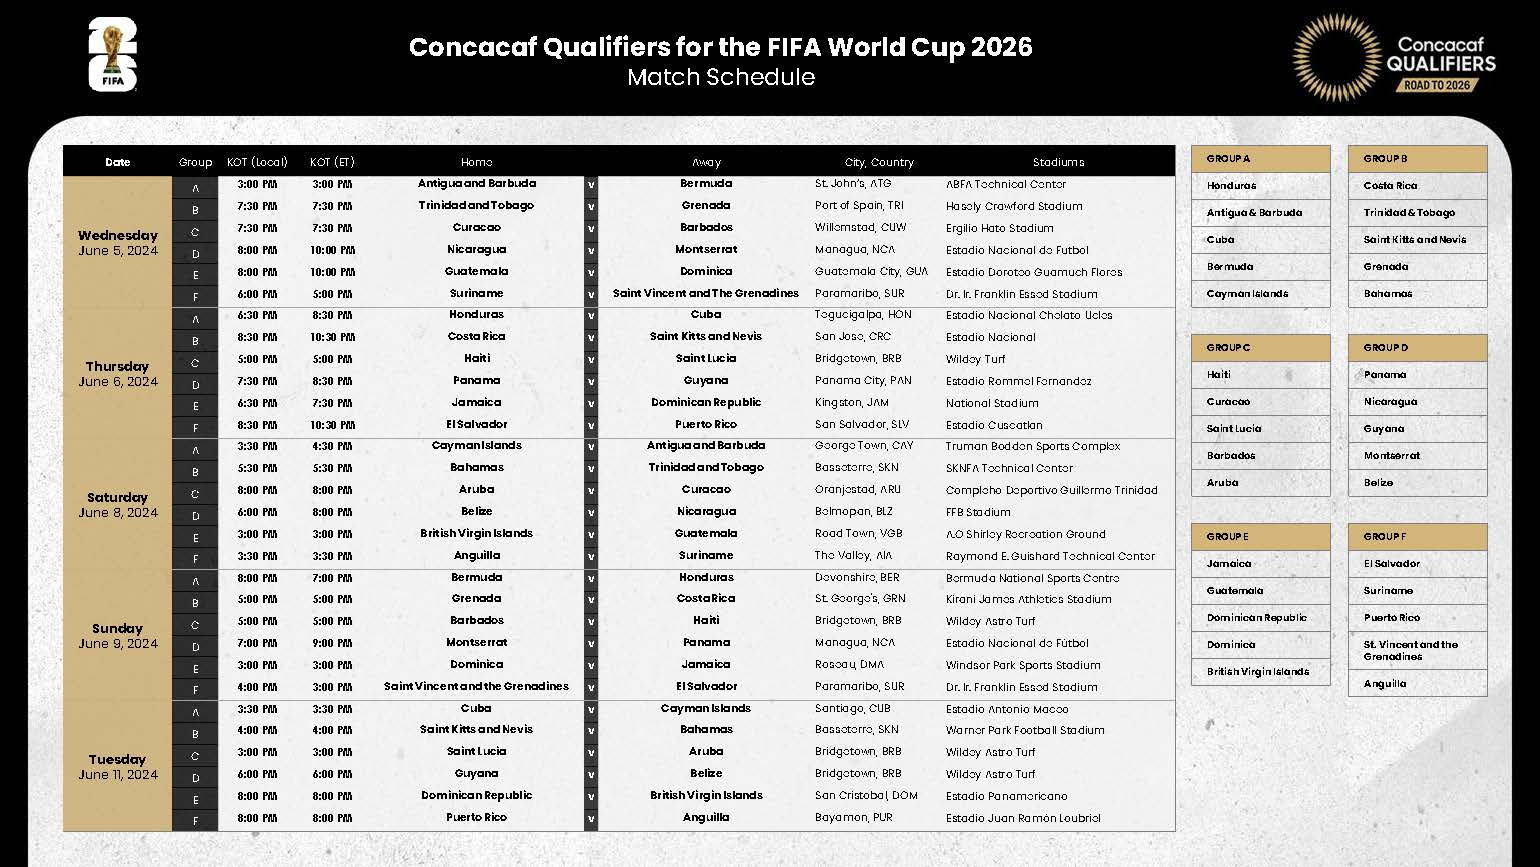 Calendario oficial de la Concacaf para las Eliminatorias rumbo al Mundial 2026